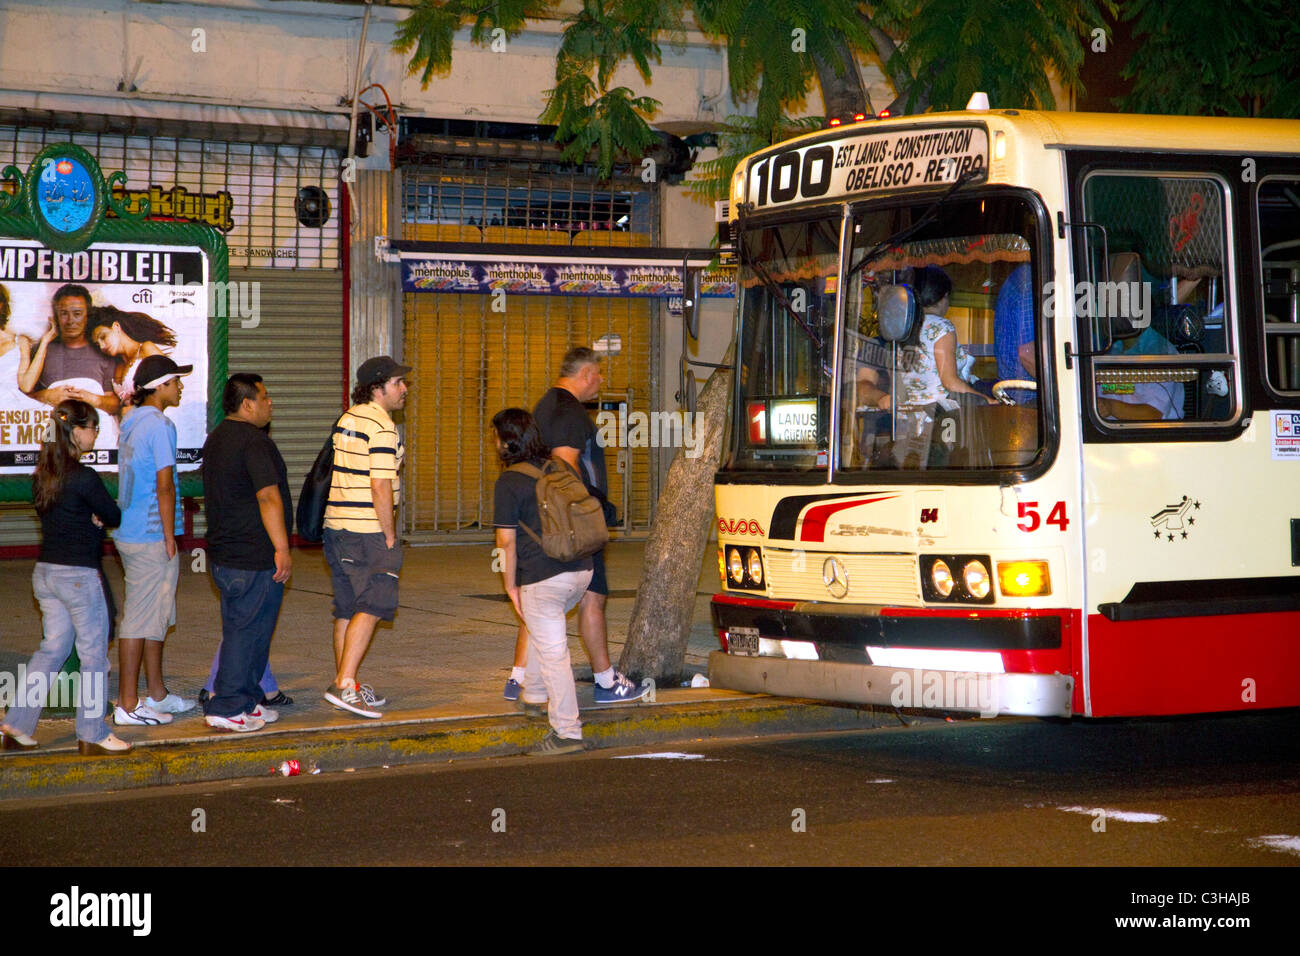 Les gens d'embarquer dans un bus de transport public à Buenos Aires, Argentine. Banque D'Images